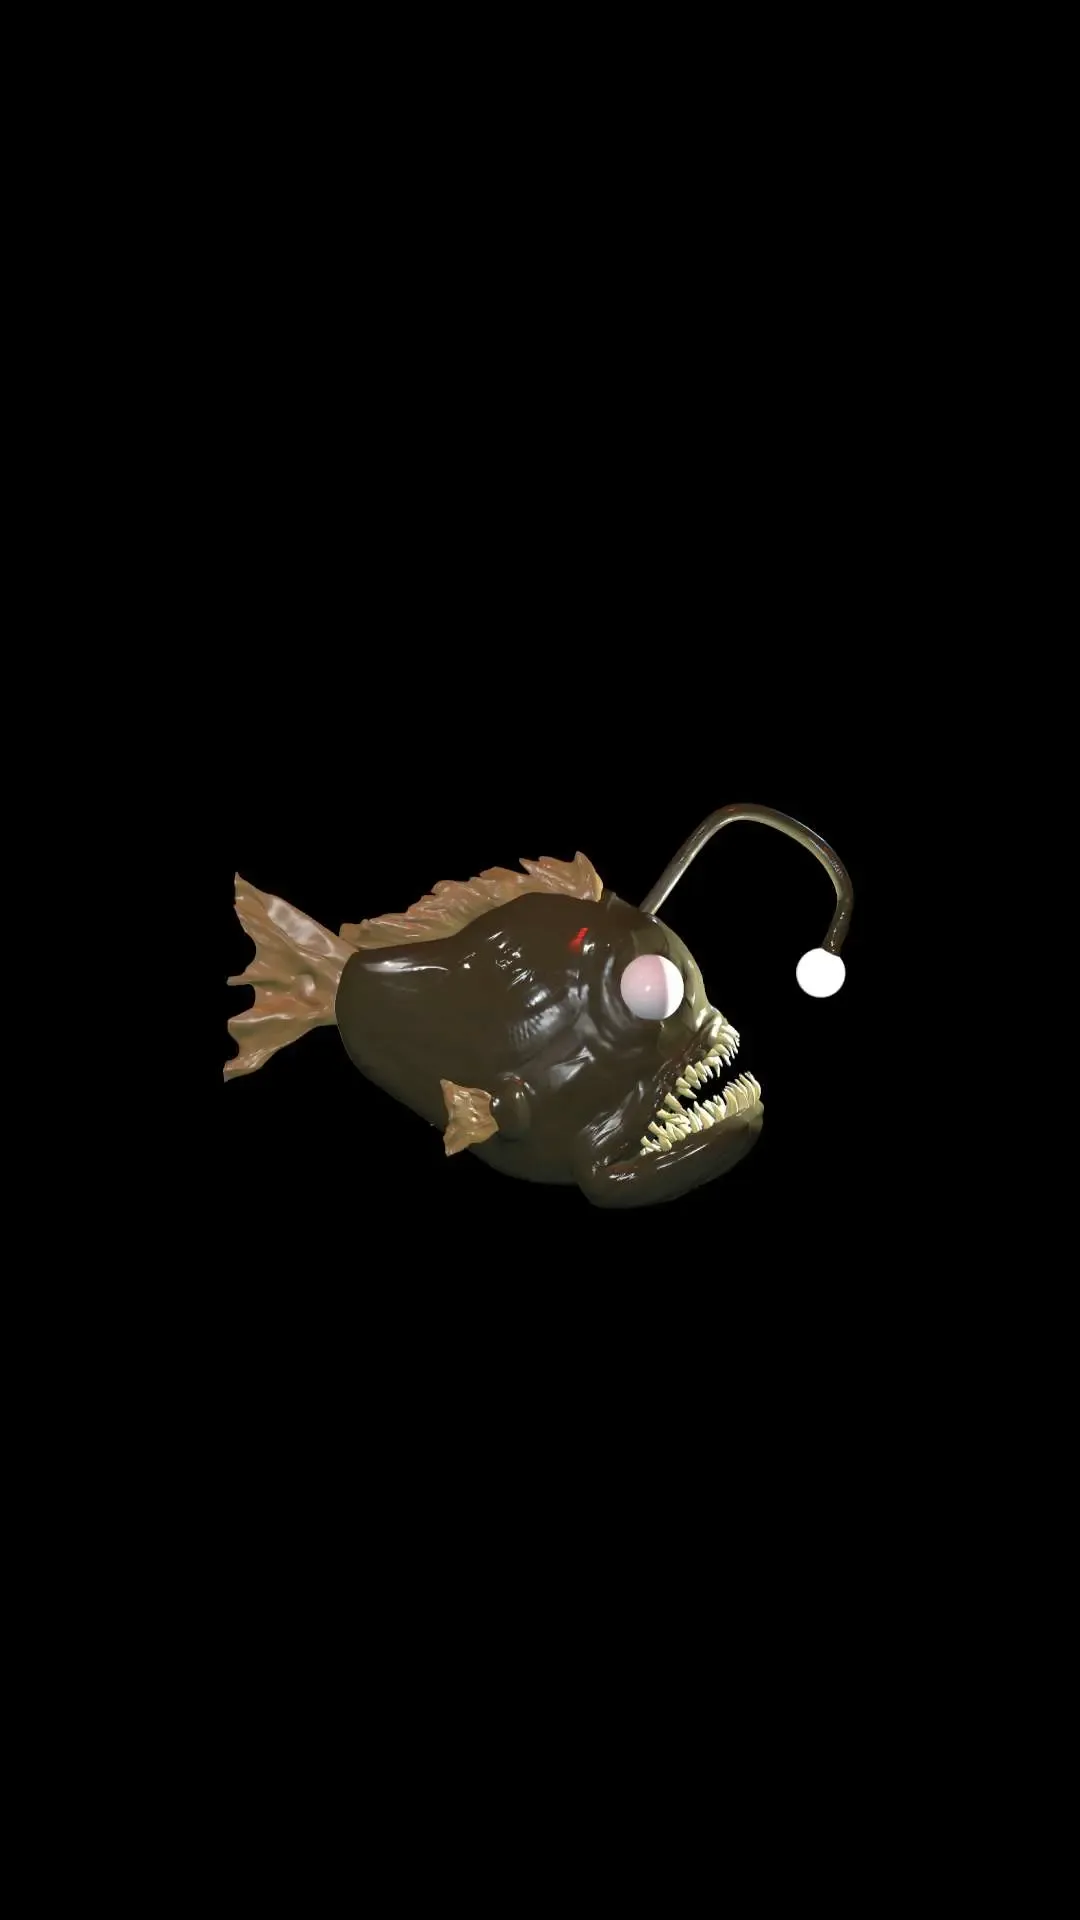 Anglerfish 